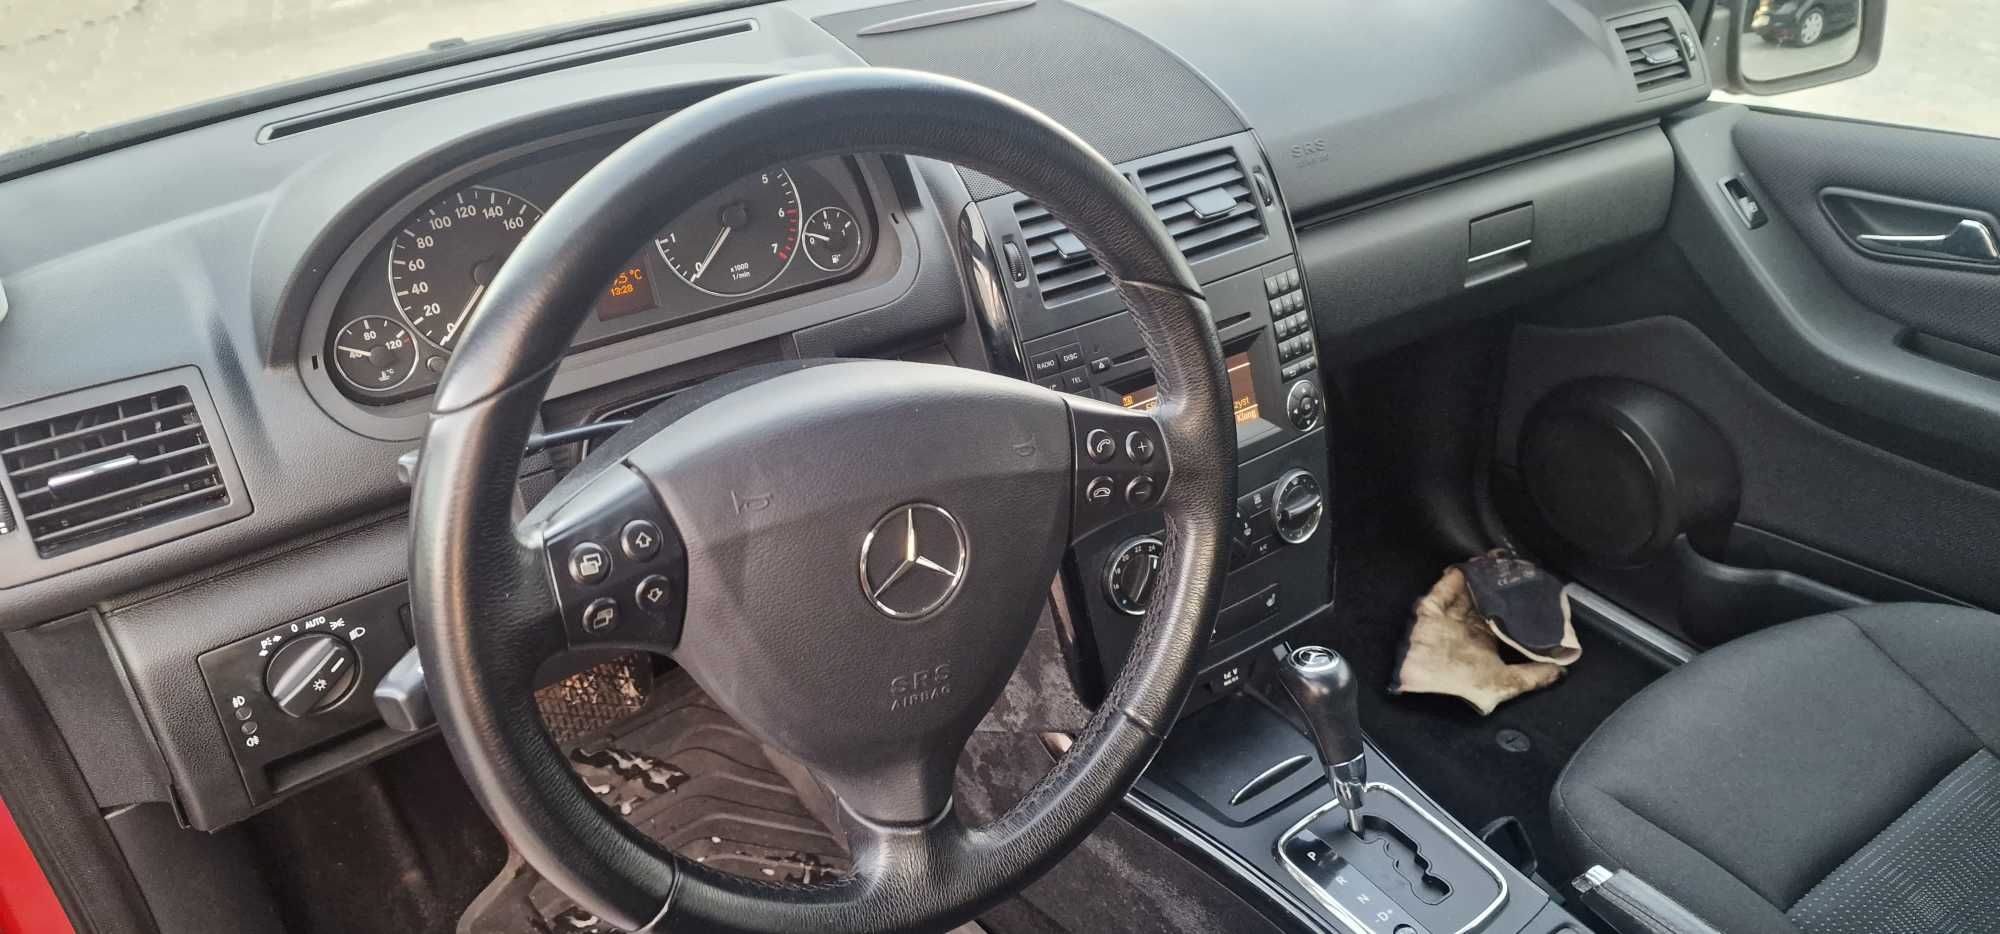 Mercedes A160 Automat Avantgarde niski przebieg zarejestrowany